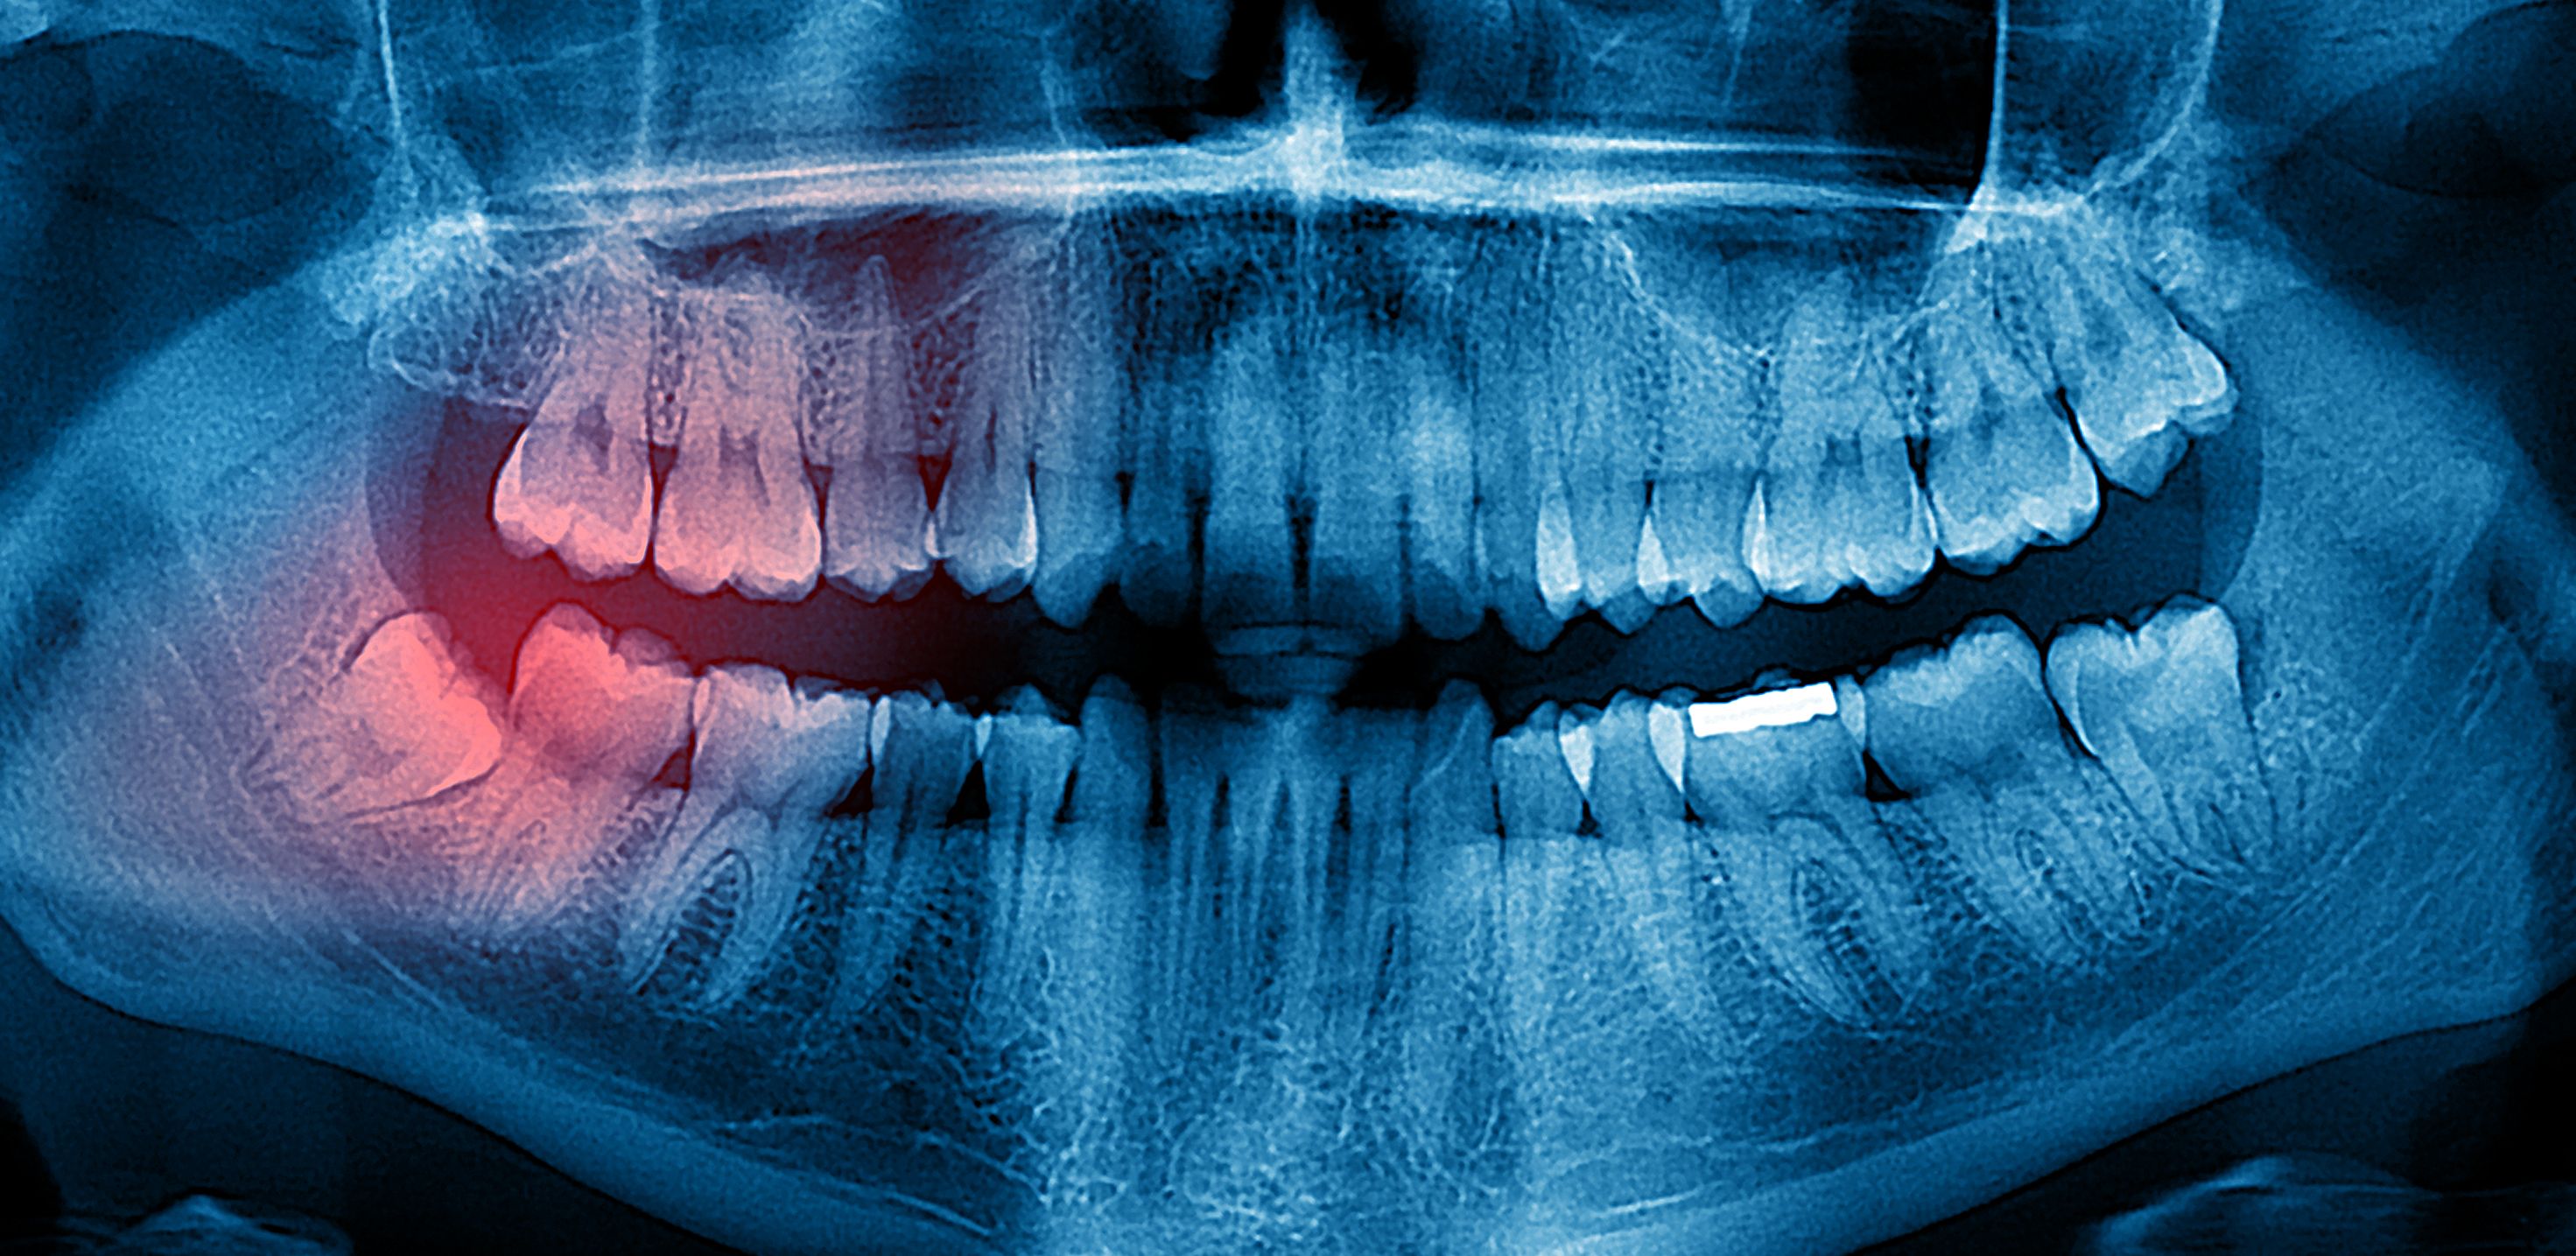 Рентген зуба, 3D КТ, панорамный снимок — в чем разница